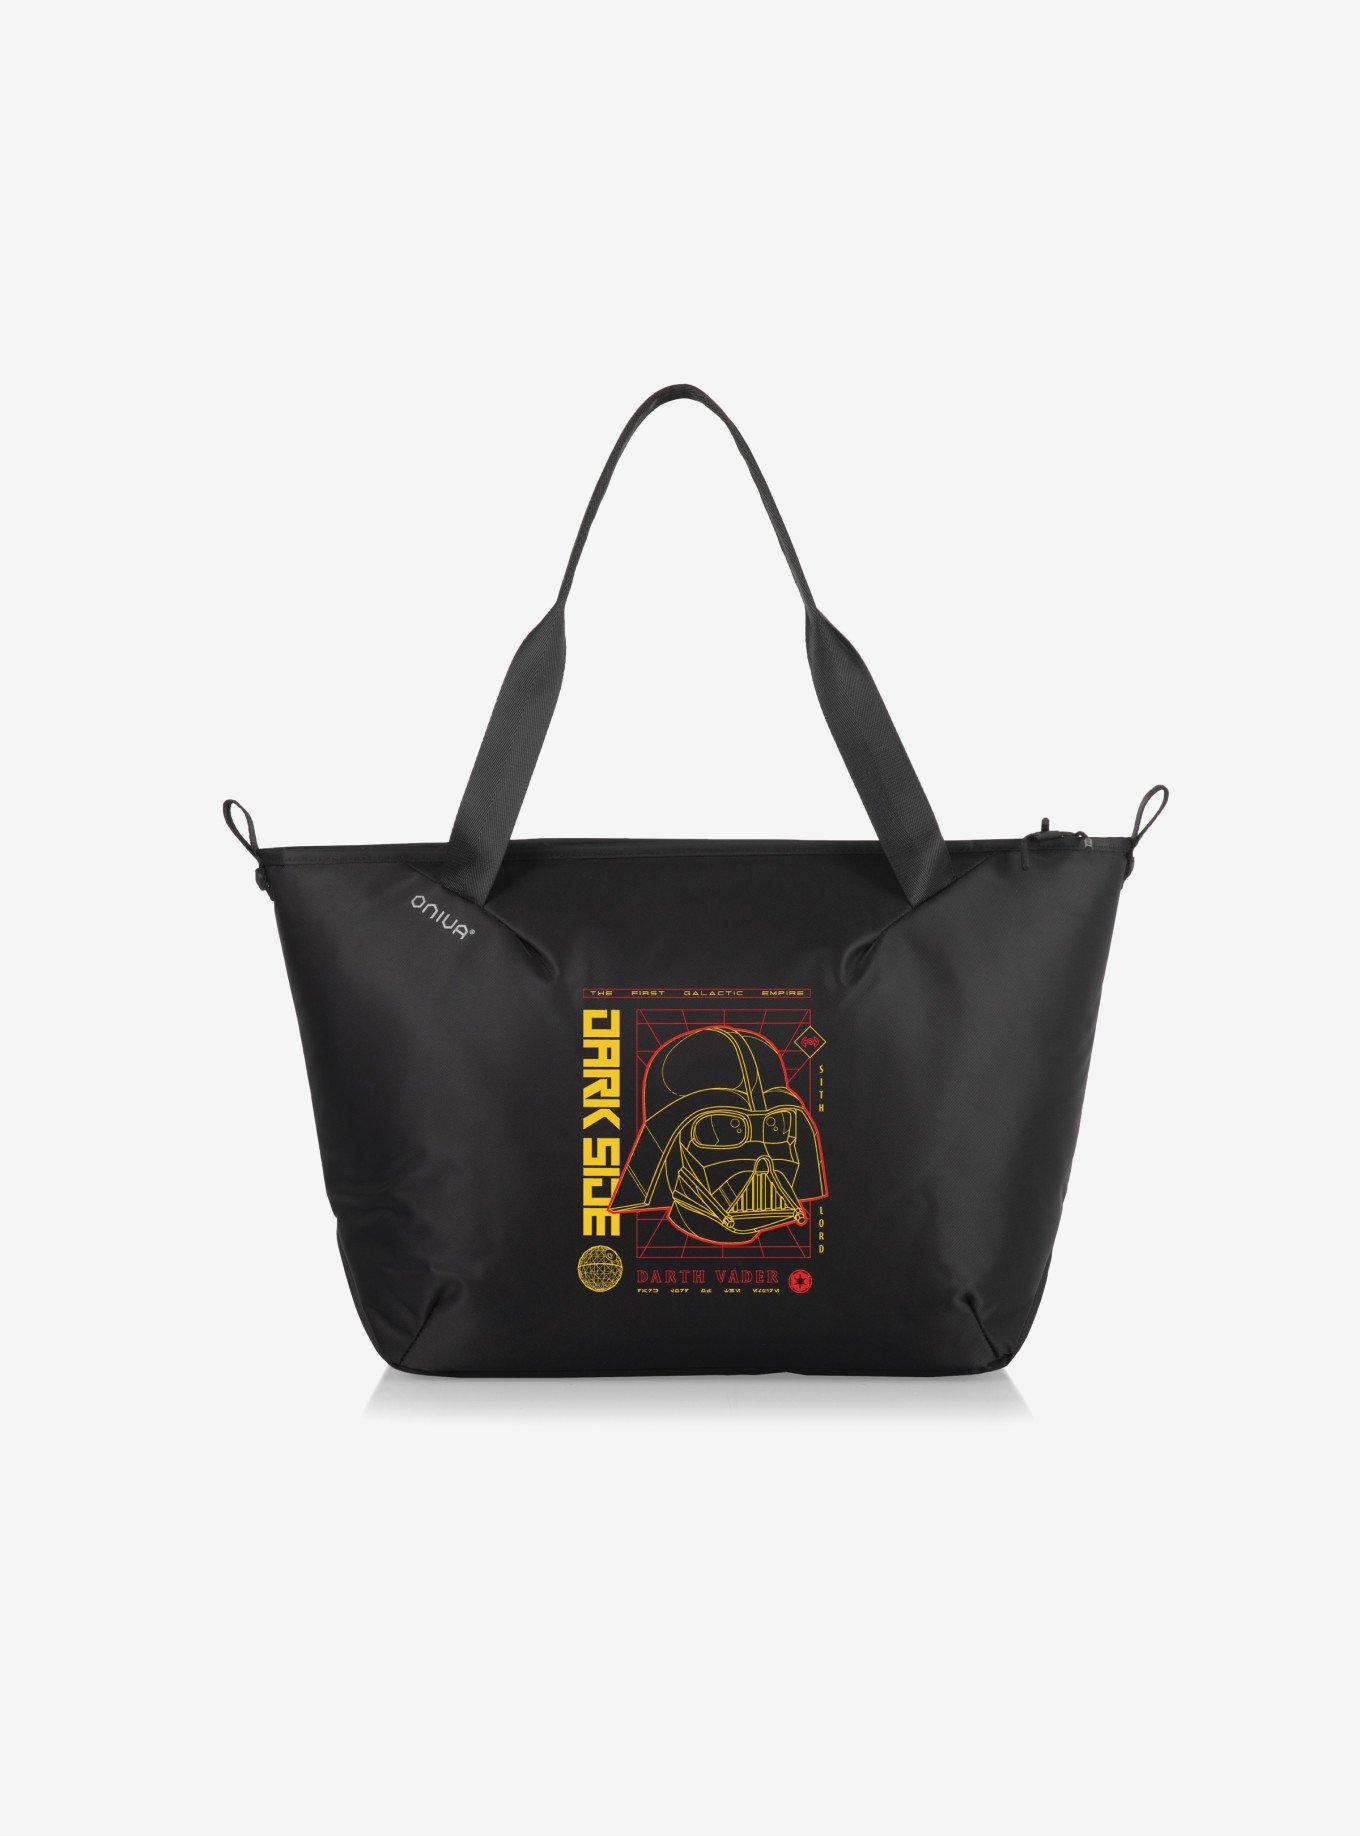 Star Wars Darth Vader Tarana Cooler Tote Bag